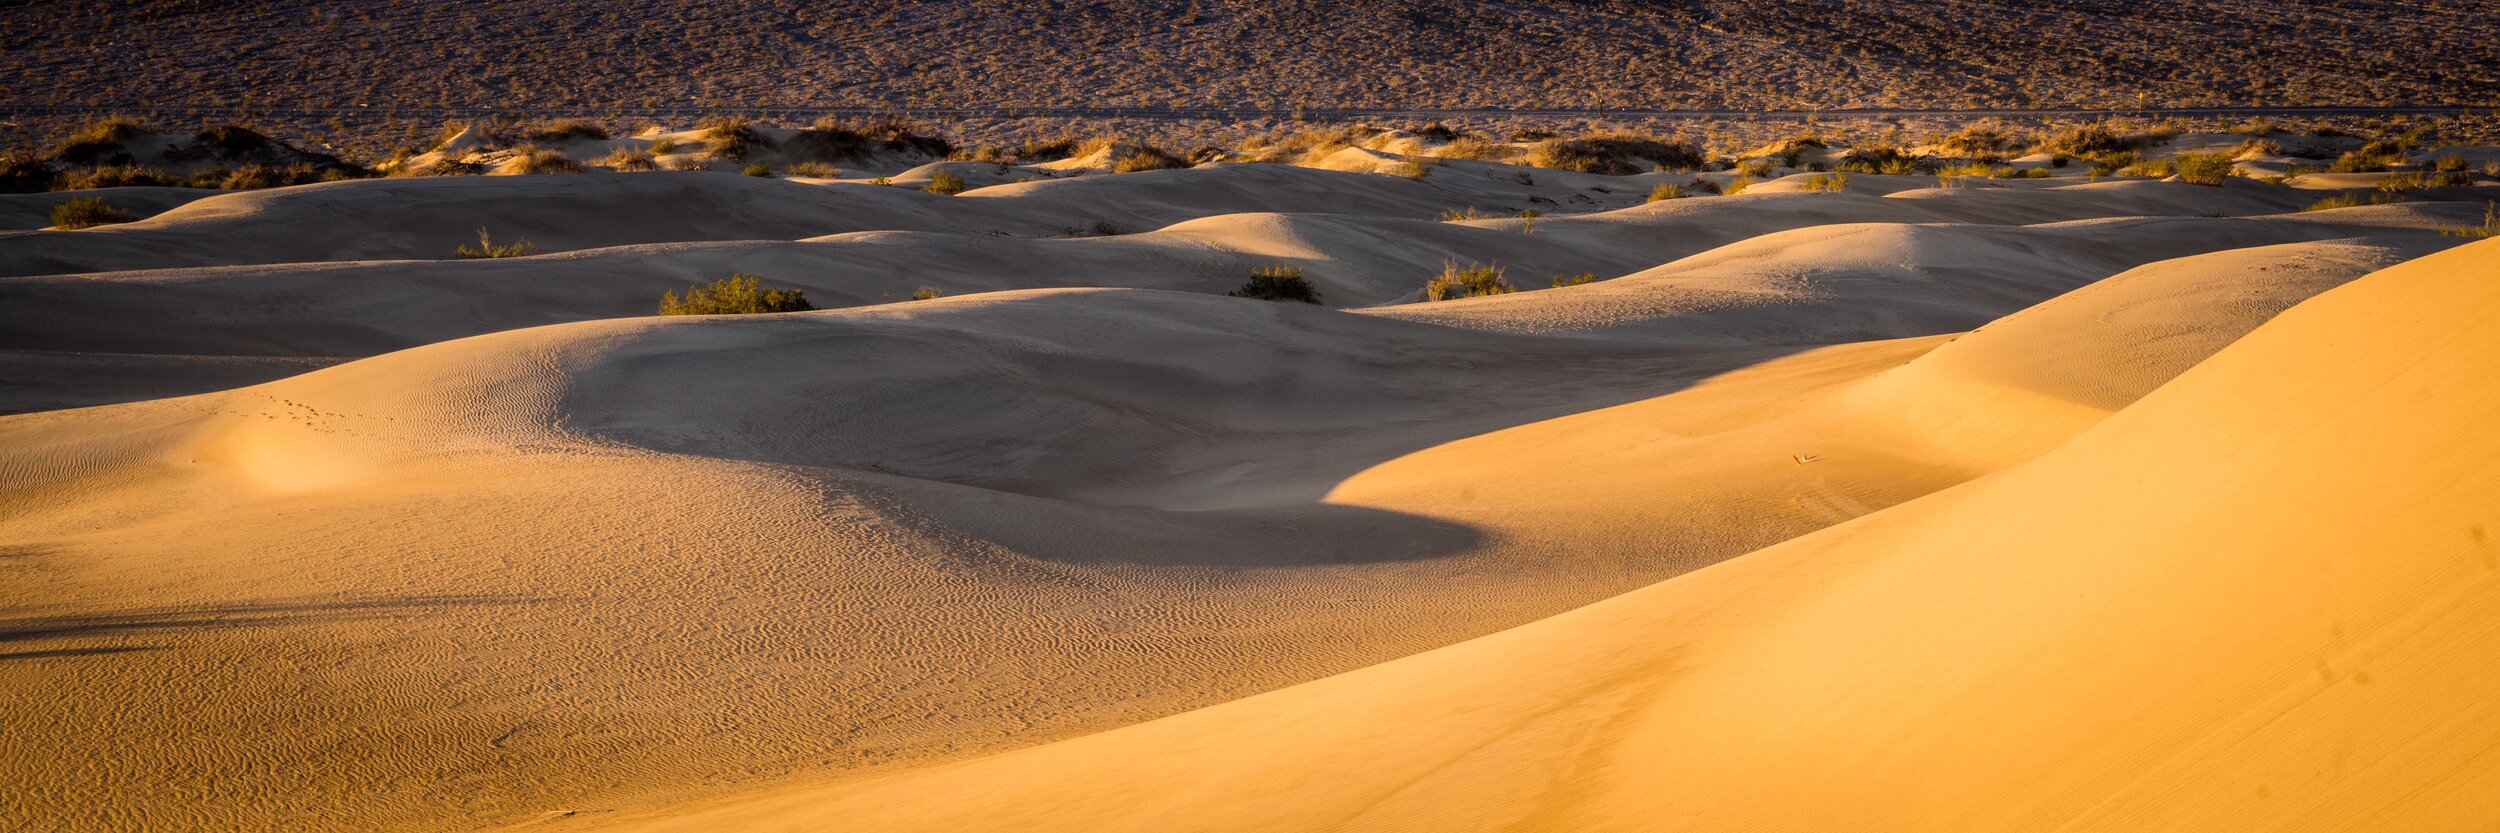 Death Valley 2019-9.jpg